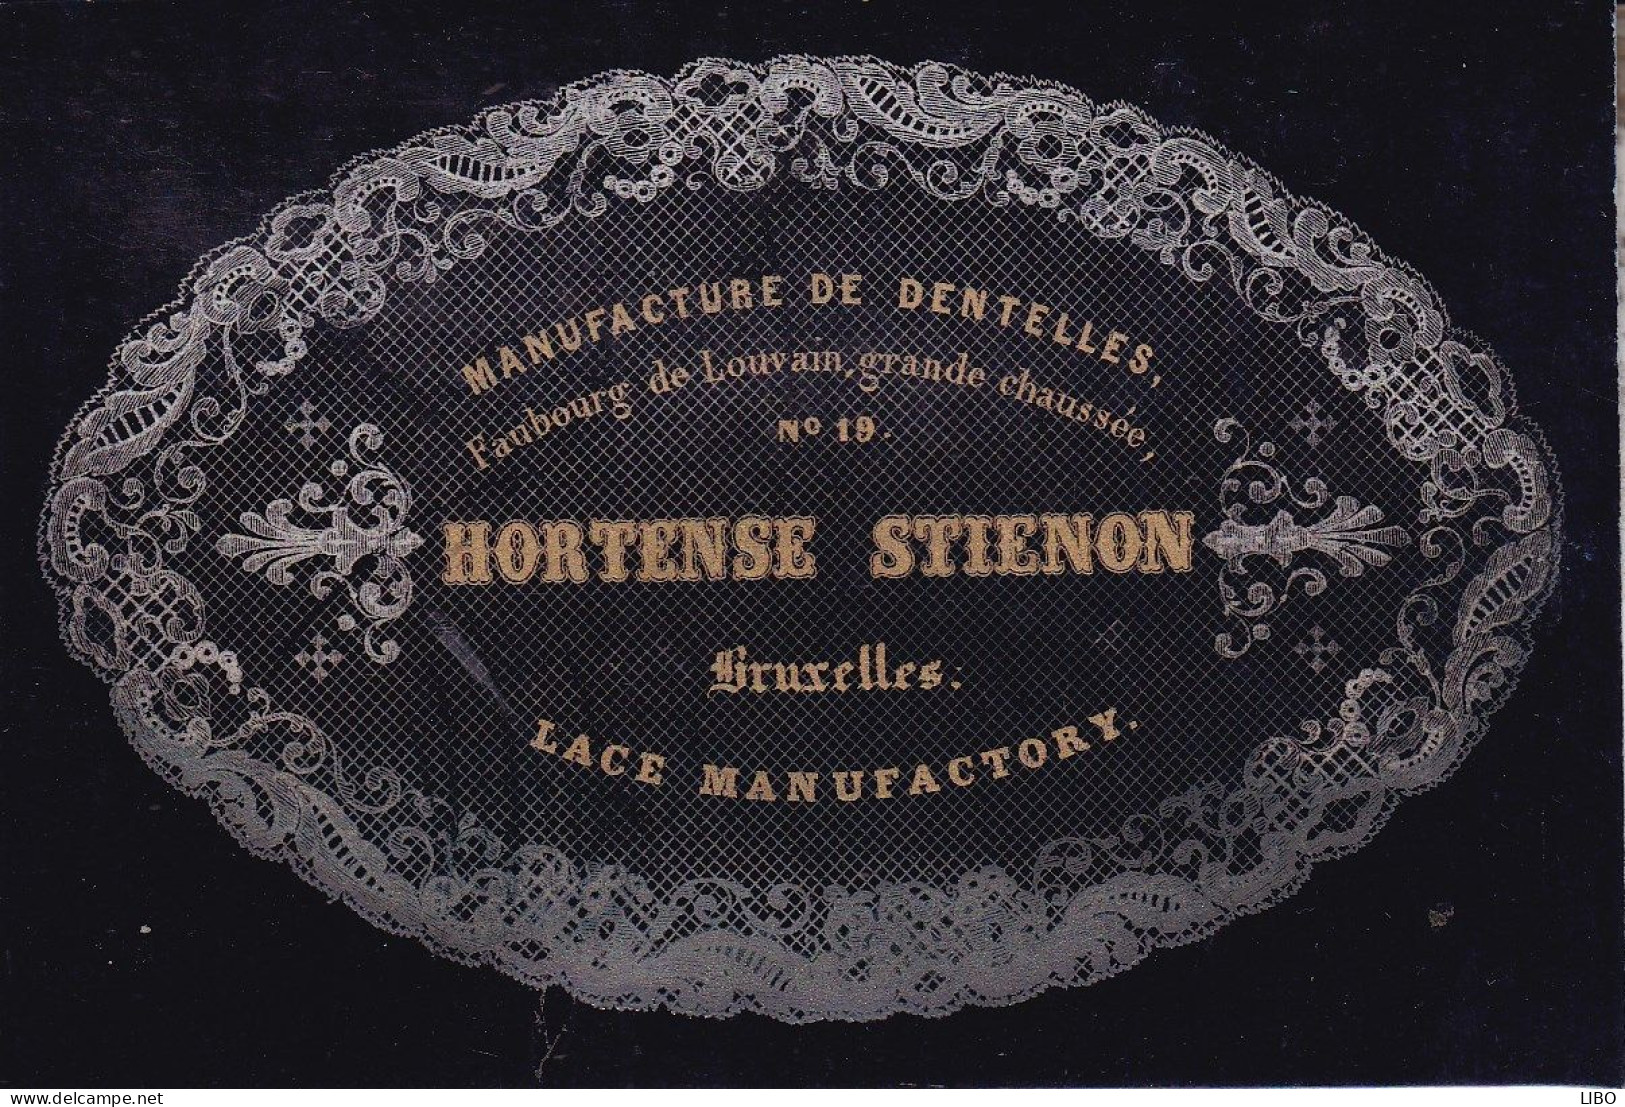 BRUXELLES Manufacture De Dentelles STIENON Hortense Carte De Visite Porcelaine Format Carte De Visite C. 1850-1855 - Cartes De Visite